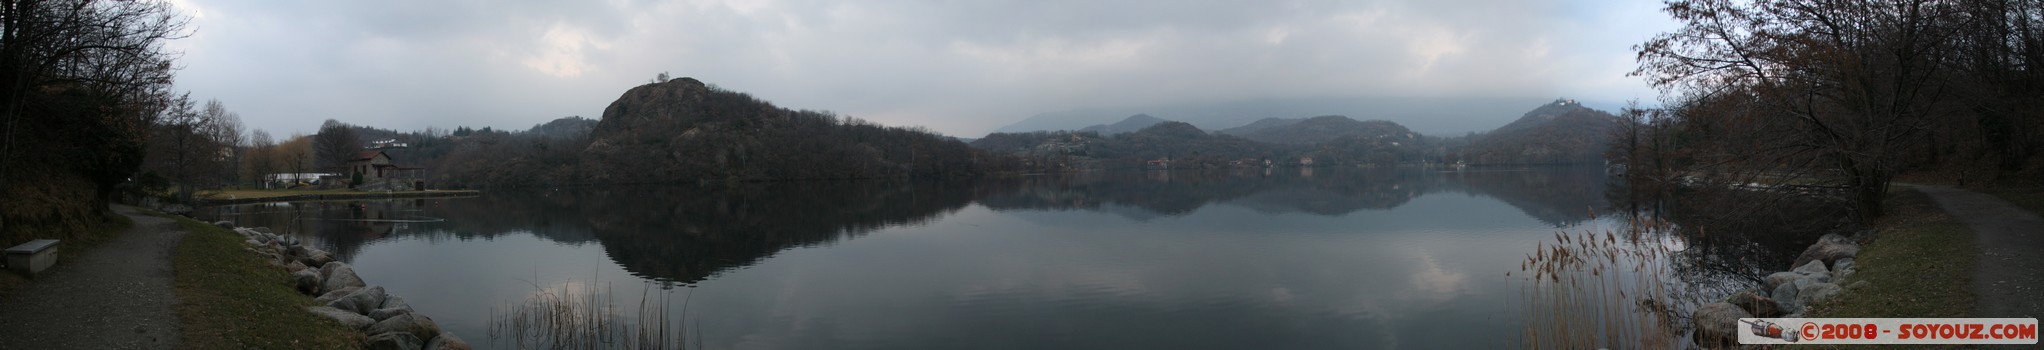 Ivrea - Panorama Lago Sirio
Via Panoramica, Montalto Dora, Torino (Piemonte), Italy
Mots-clés: Lac panorama